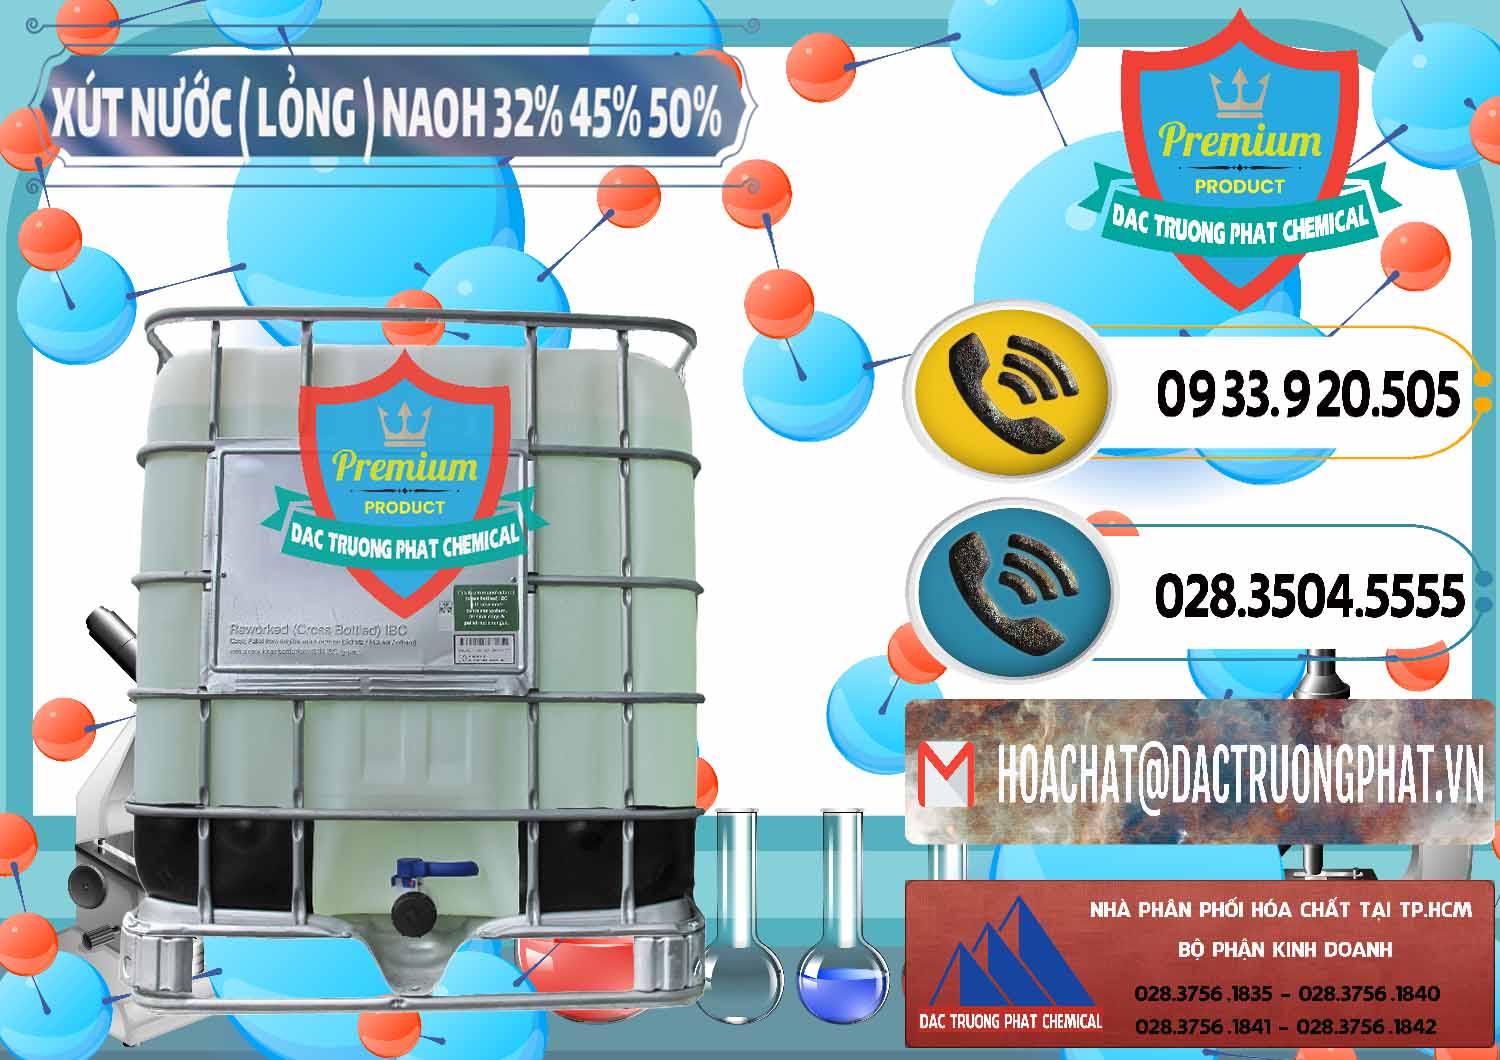 Cty kinh doanh - bán Xút Lỏng – NaOH Lỏng 32% 45% 50% Việt Nam - 0195 - Công ty chuyên phân phối _ cung ứng hóa chất tại TP.HCM - hoachatdetnhuom.vn